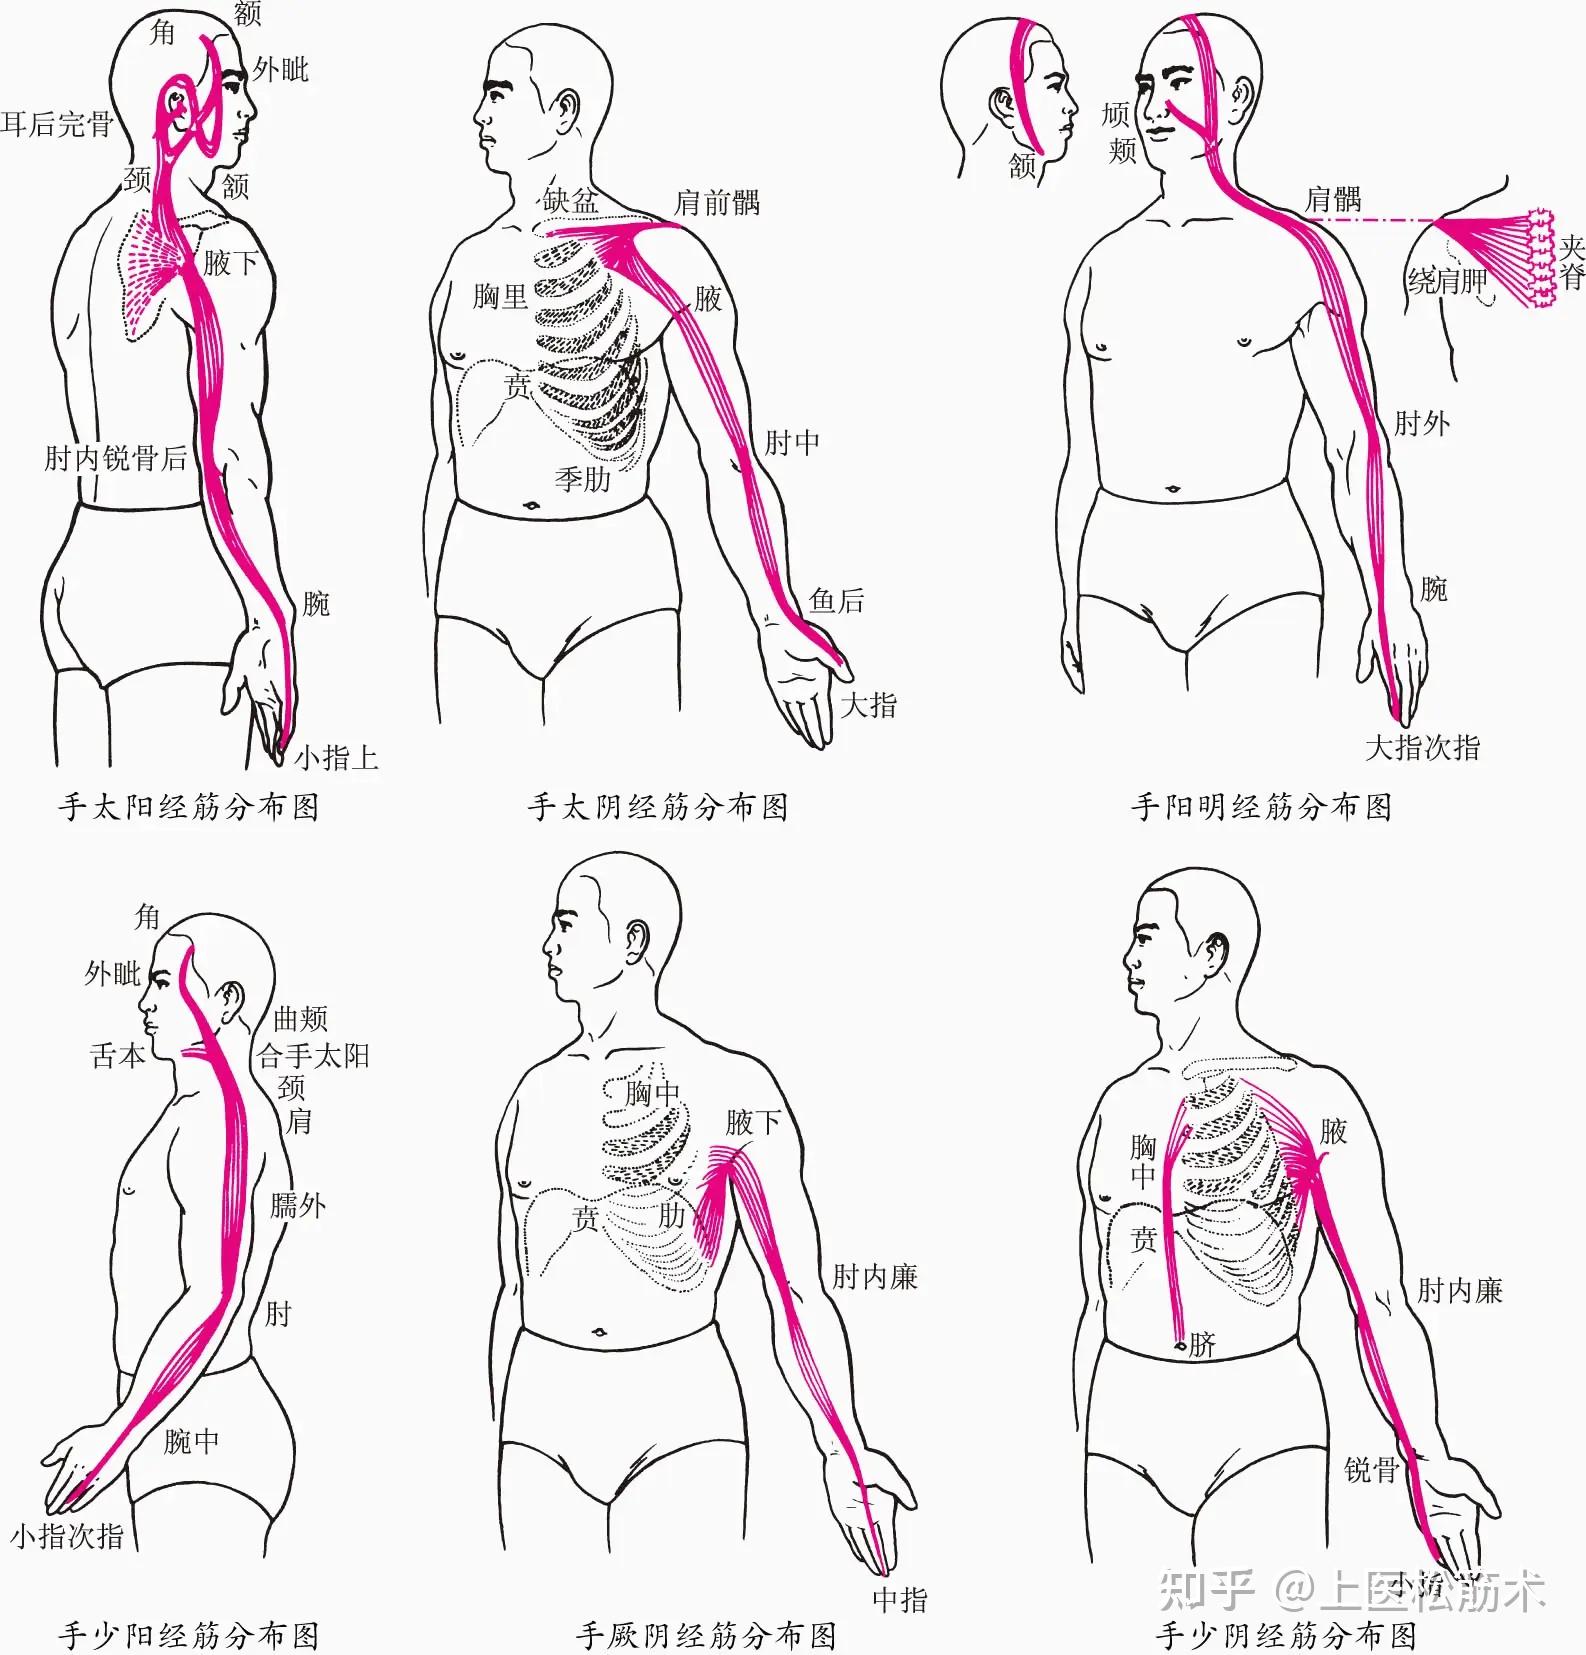 中国的经筋疗法概述